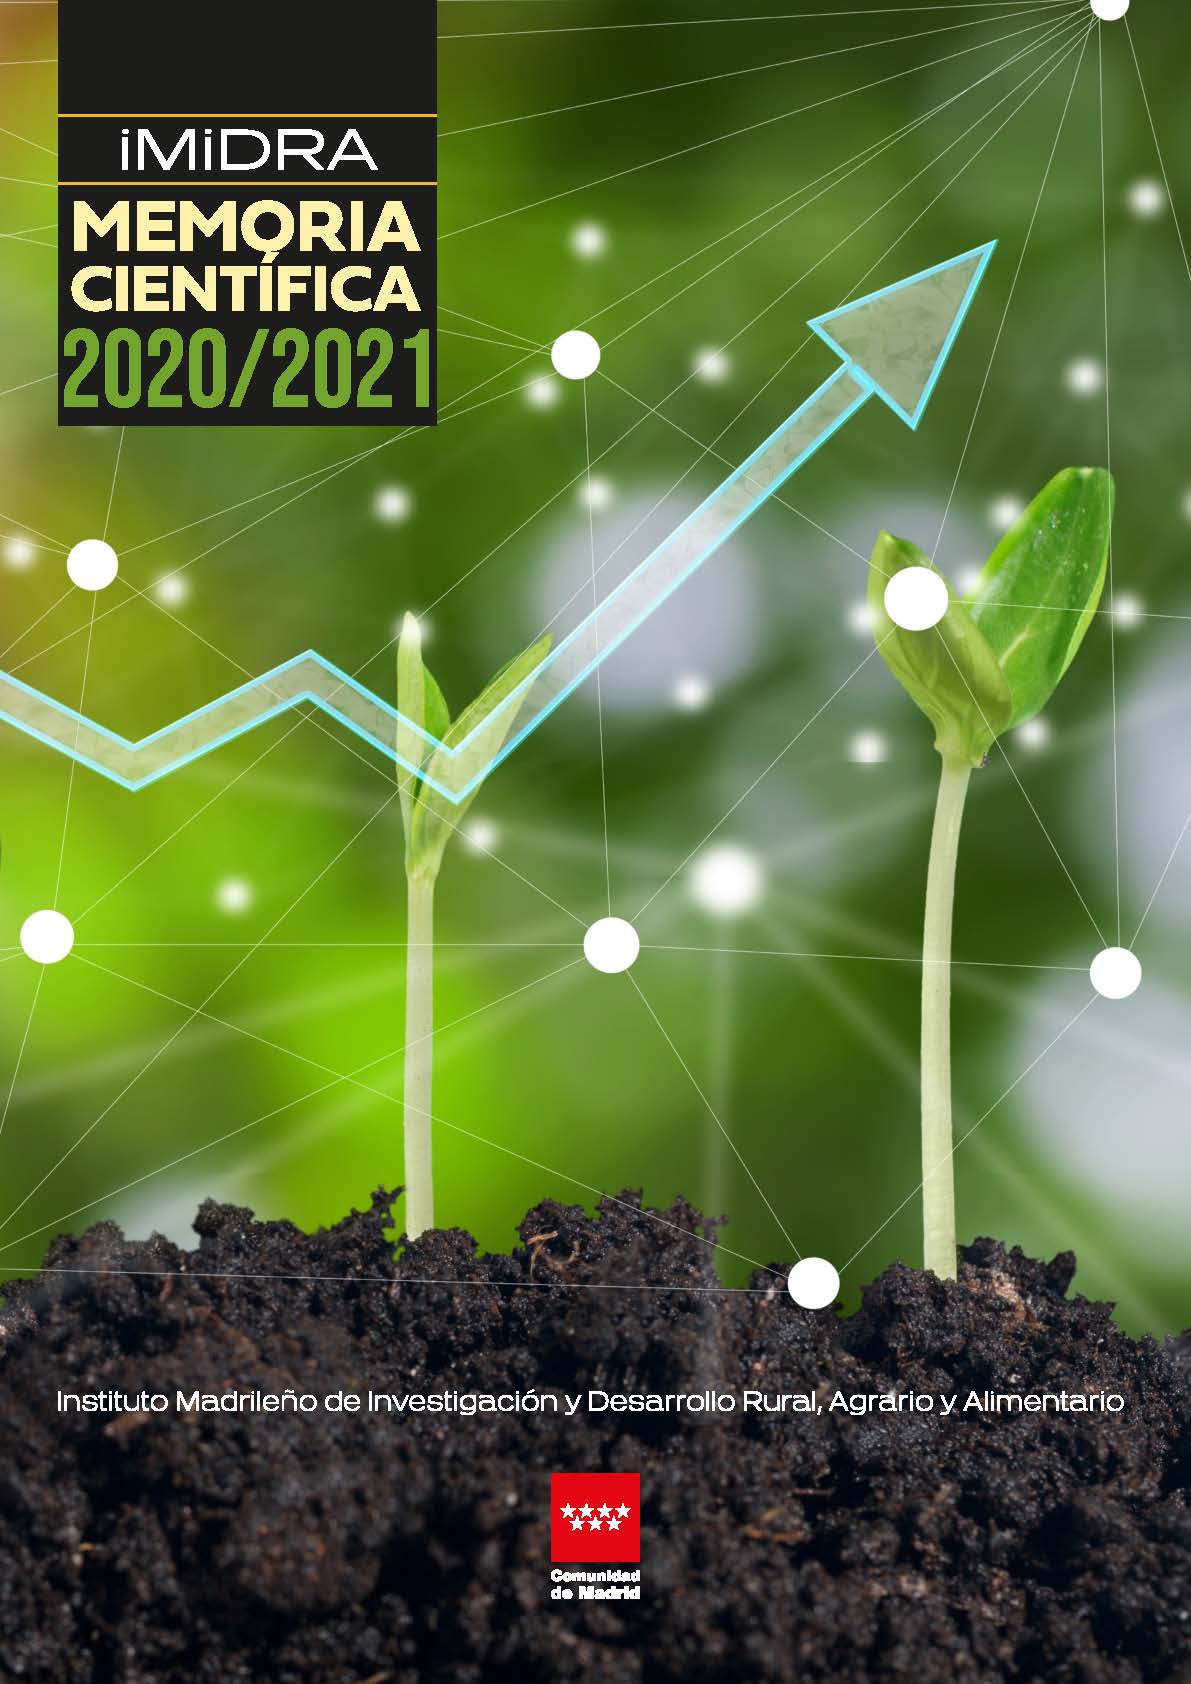 Cover of IMIDRA Scientific Report 2020-2021